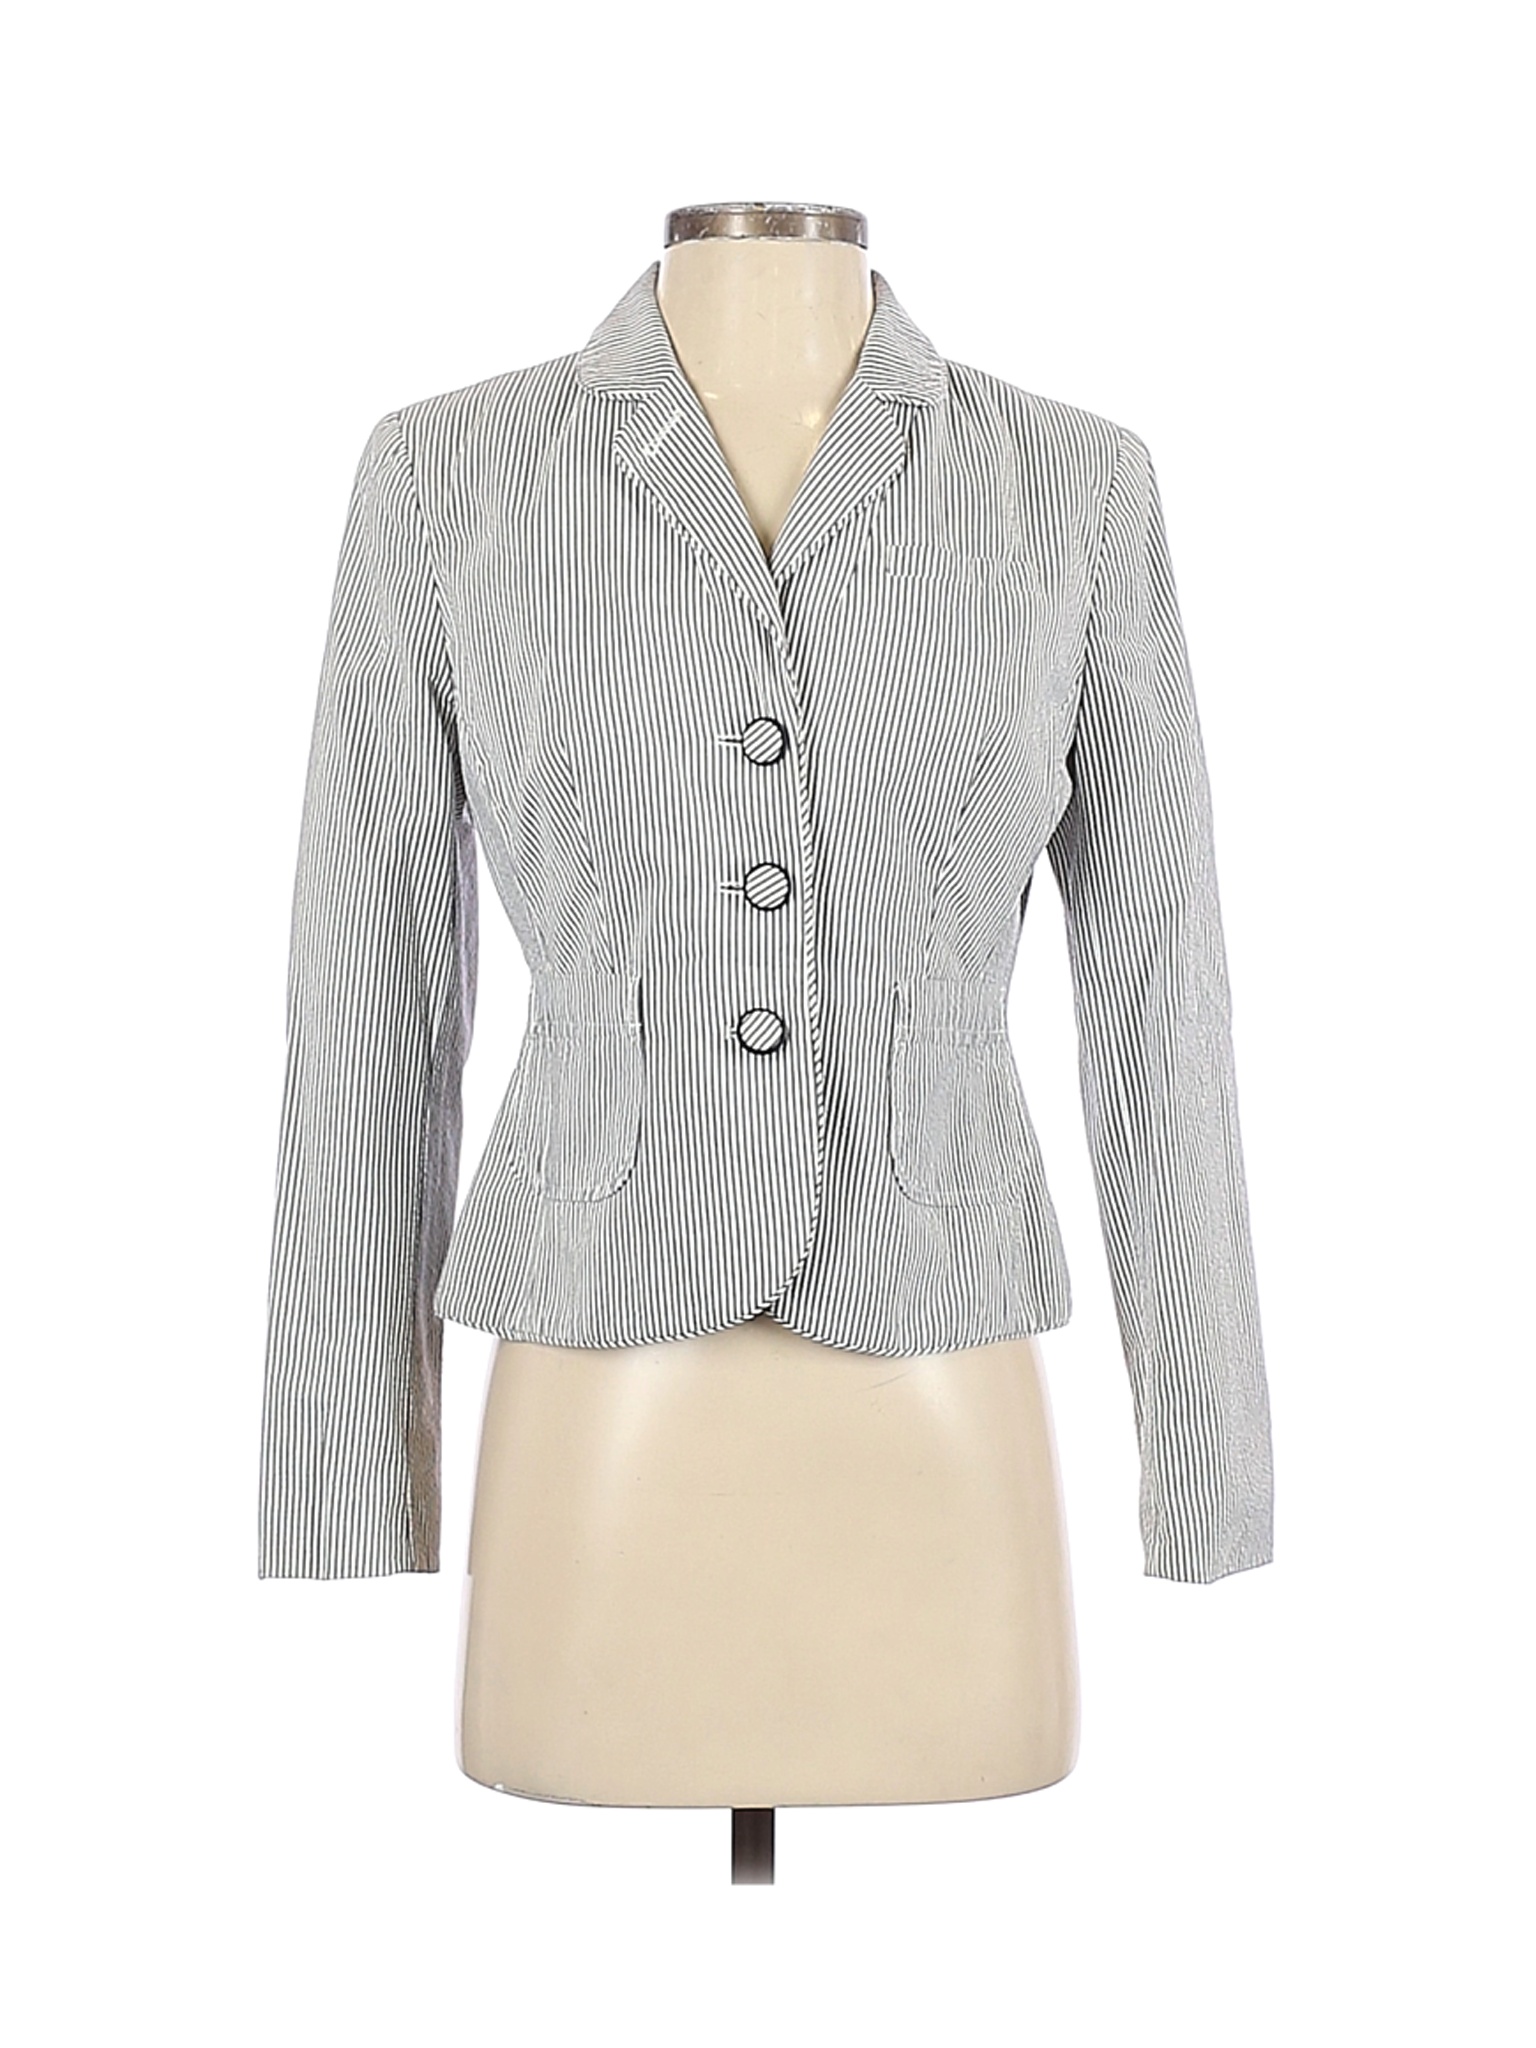 Ann Taylor LOFT Women Gray Jacket 4 Petites | eBay